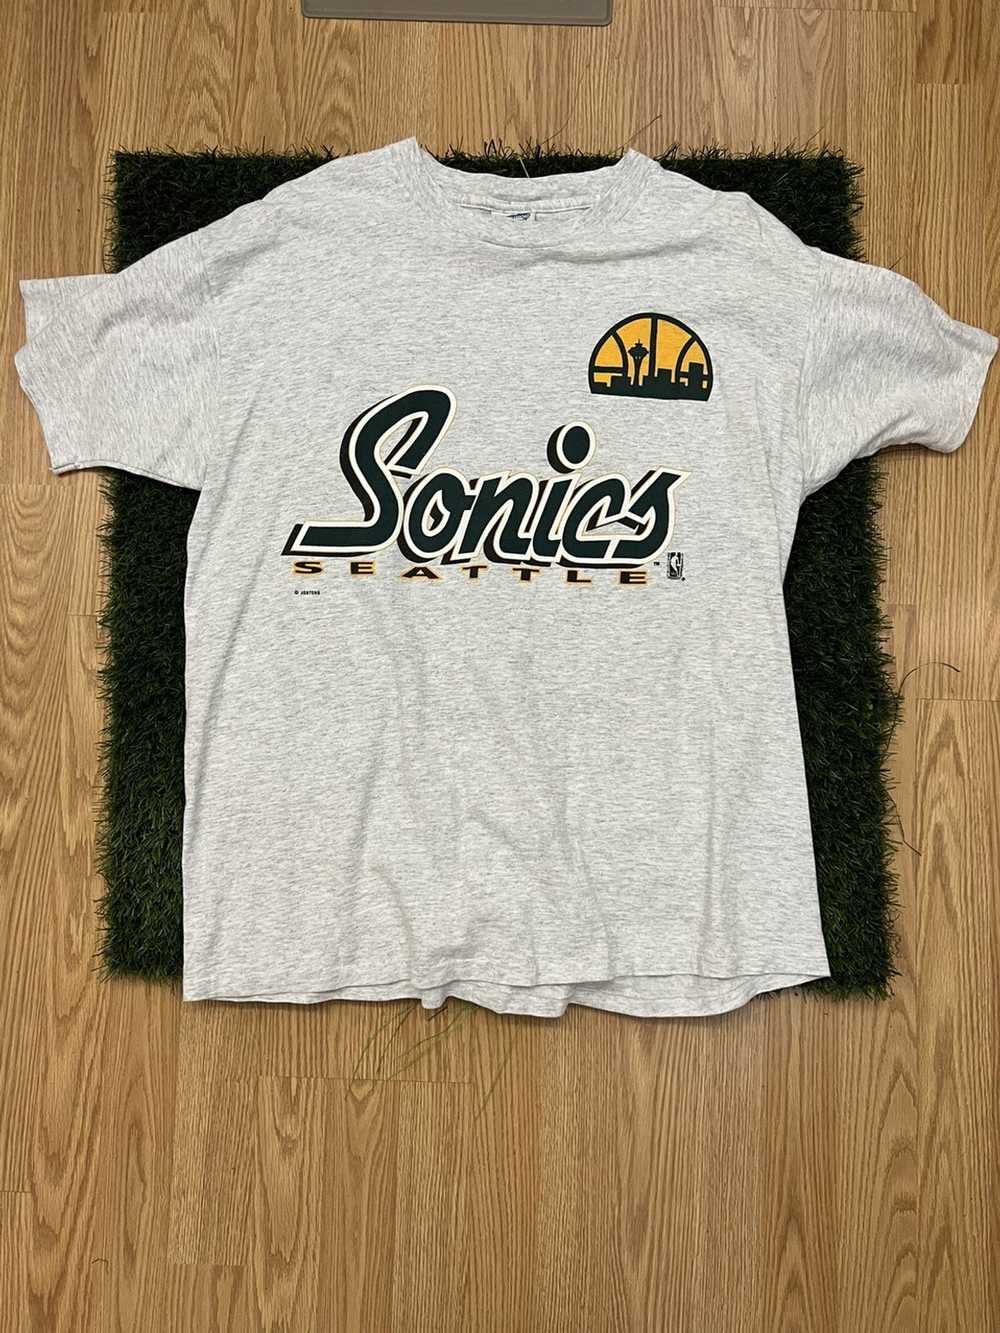 Vintage Seattle Sonics vintage tee - image 1